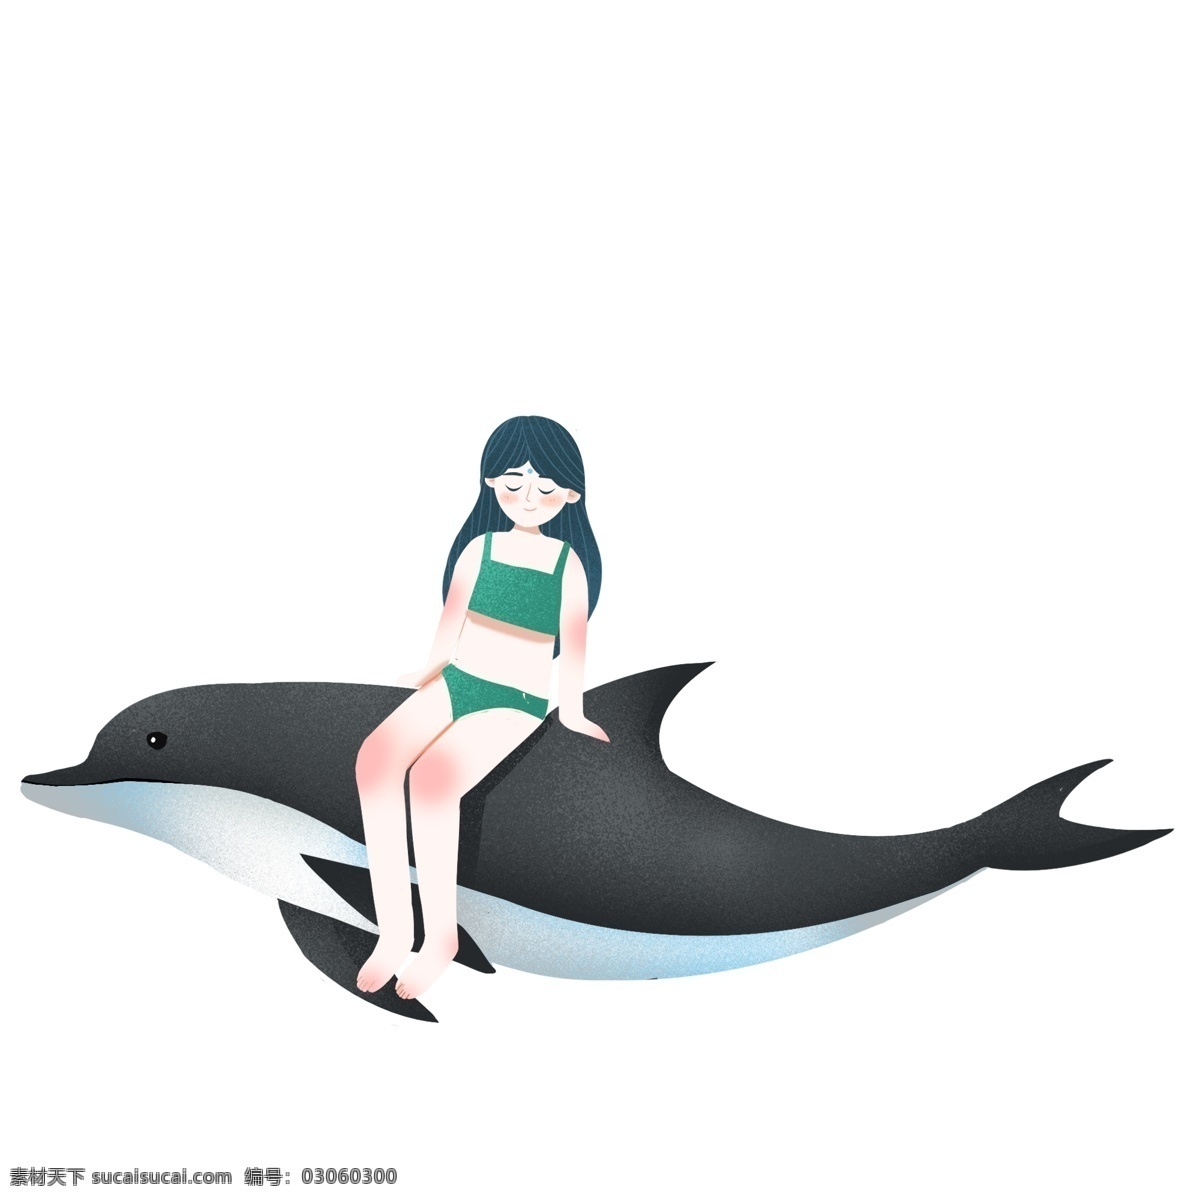 坐在 海豚 上 女孩 图案 元素 卡通人物 海豚上的女孩 设计元素 手绘元素 psd元素 免抠元素